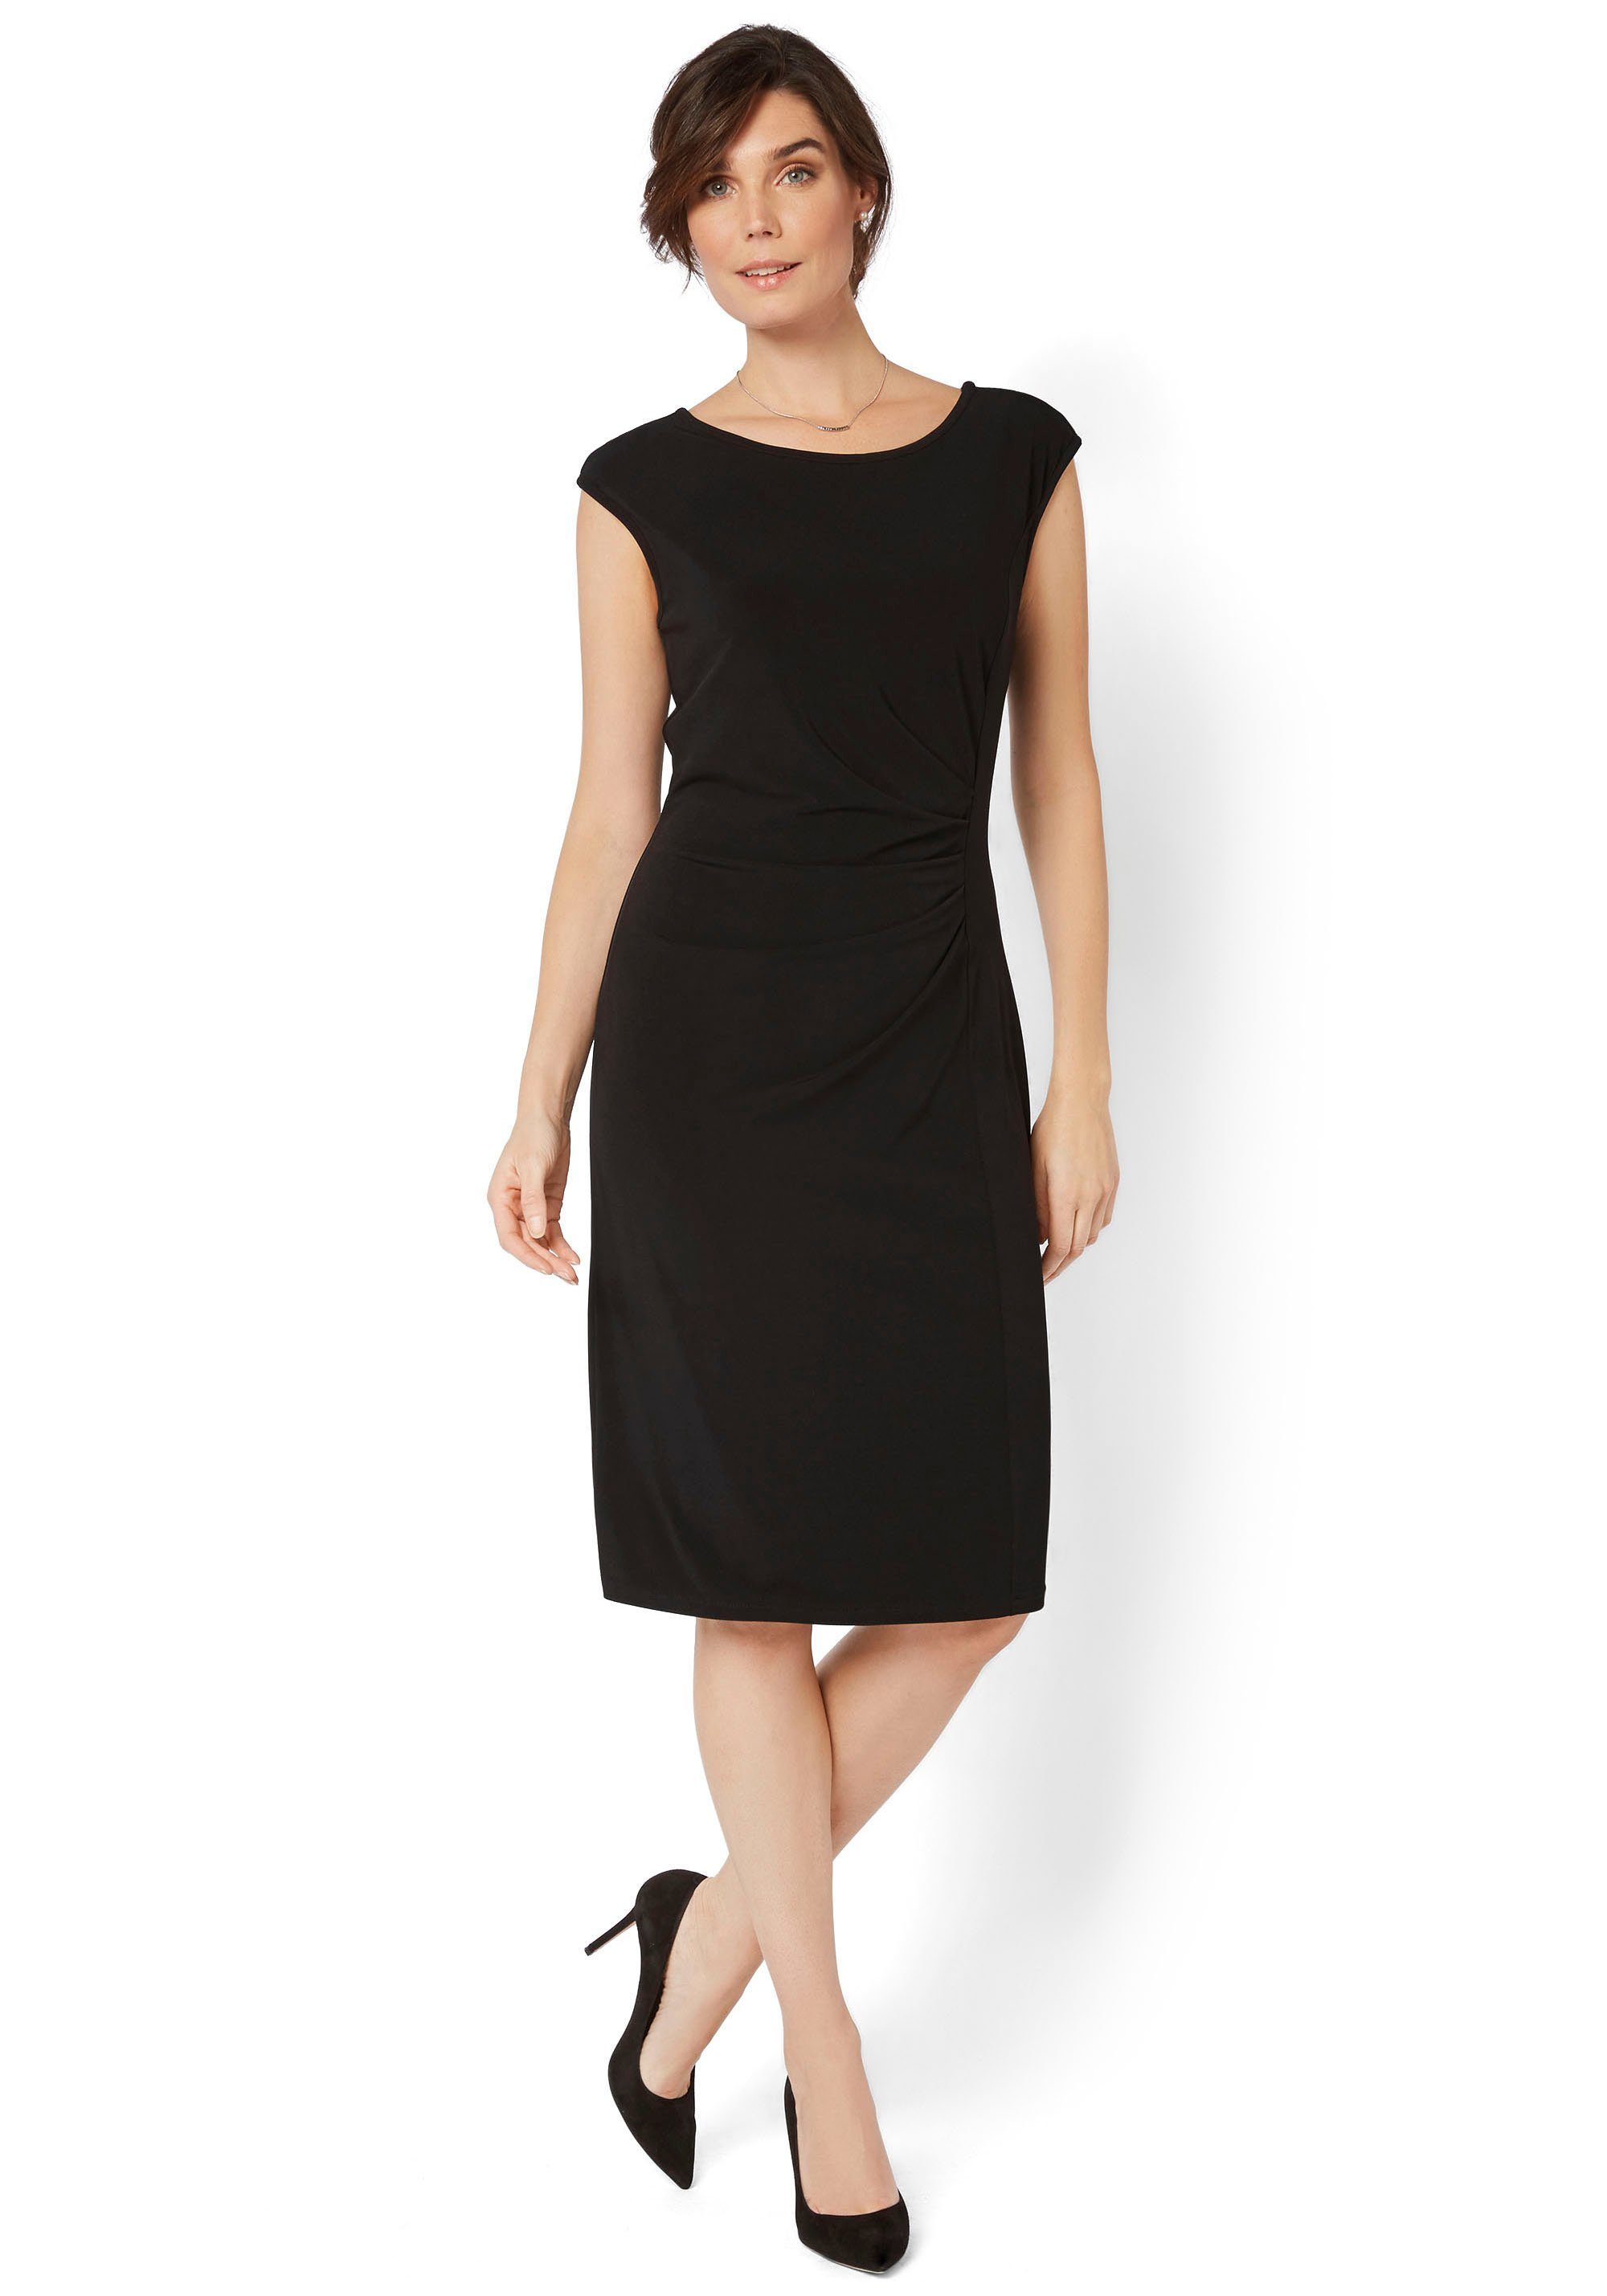 HERMANN LANGE Collection Jerseykleid mit schwarz eleganter Raffung